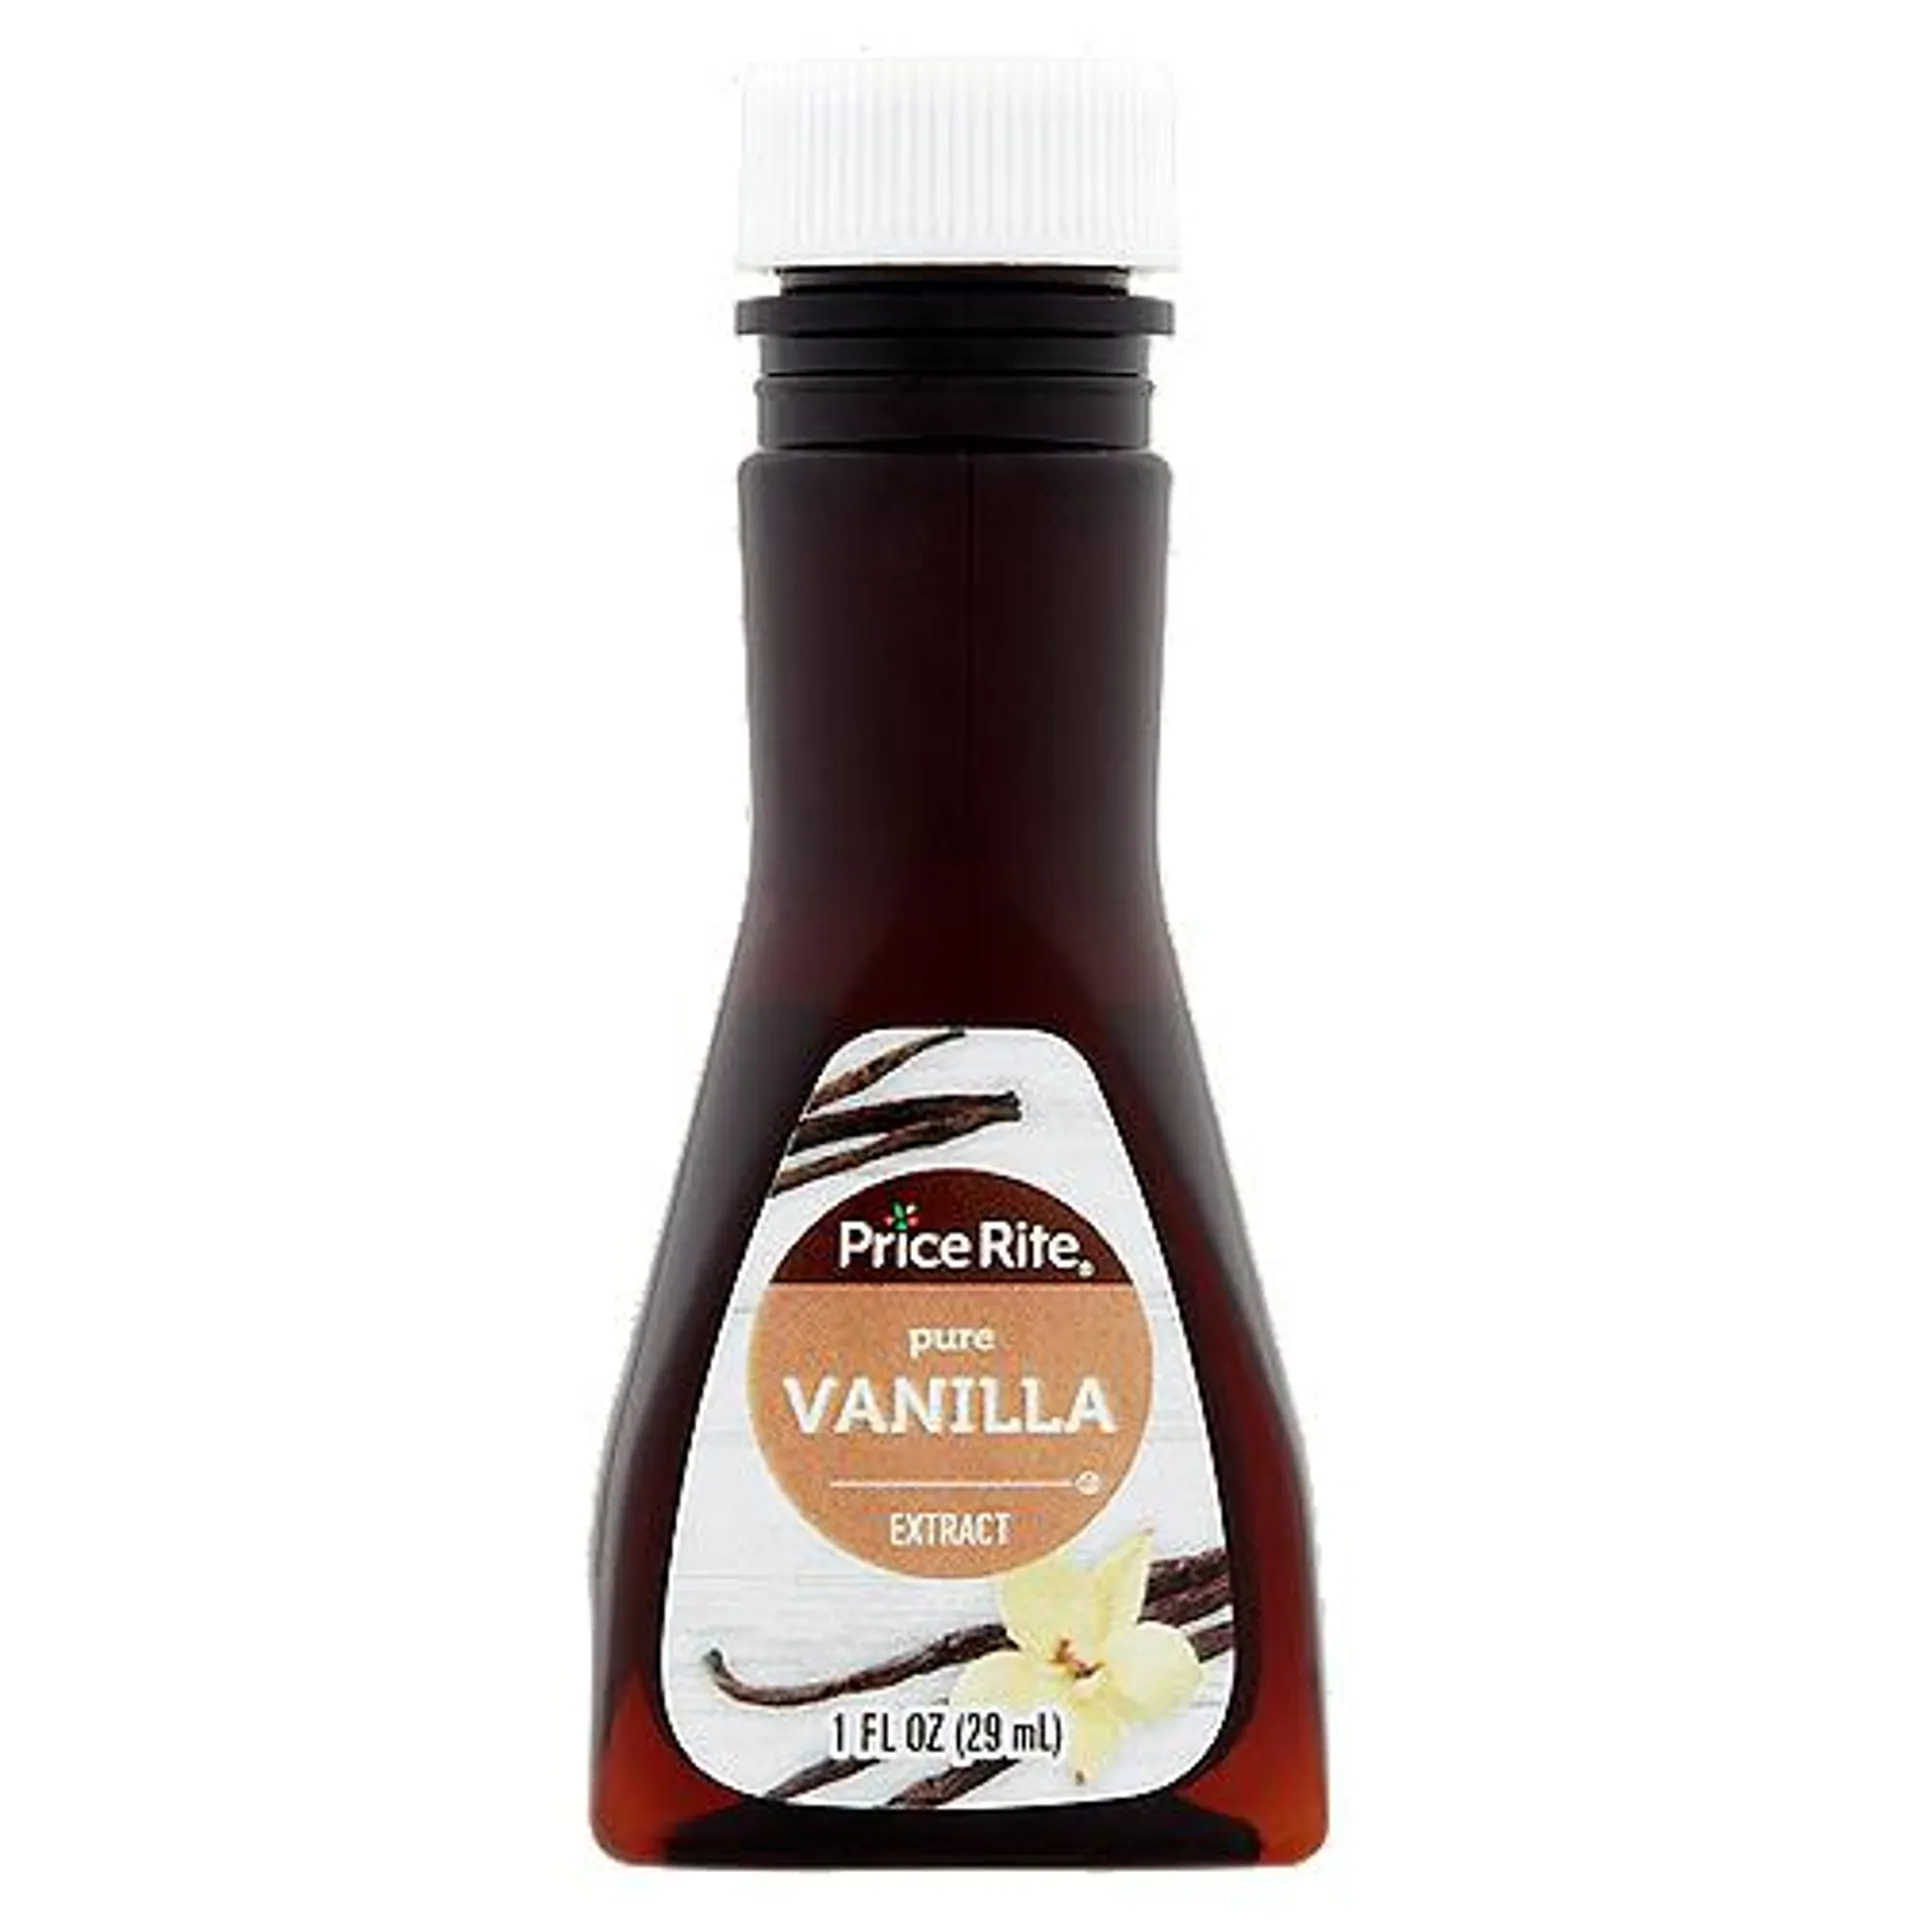 Price Rite Pure Vanilla Extract, 1 fl oz